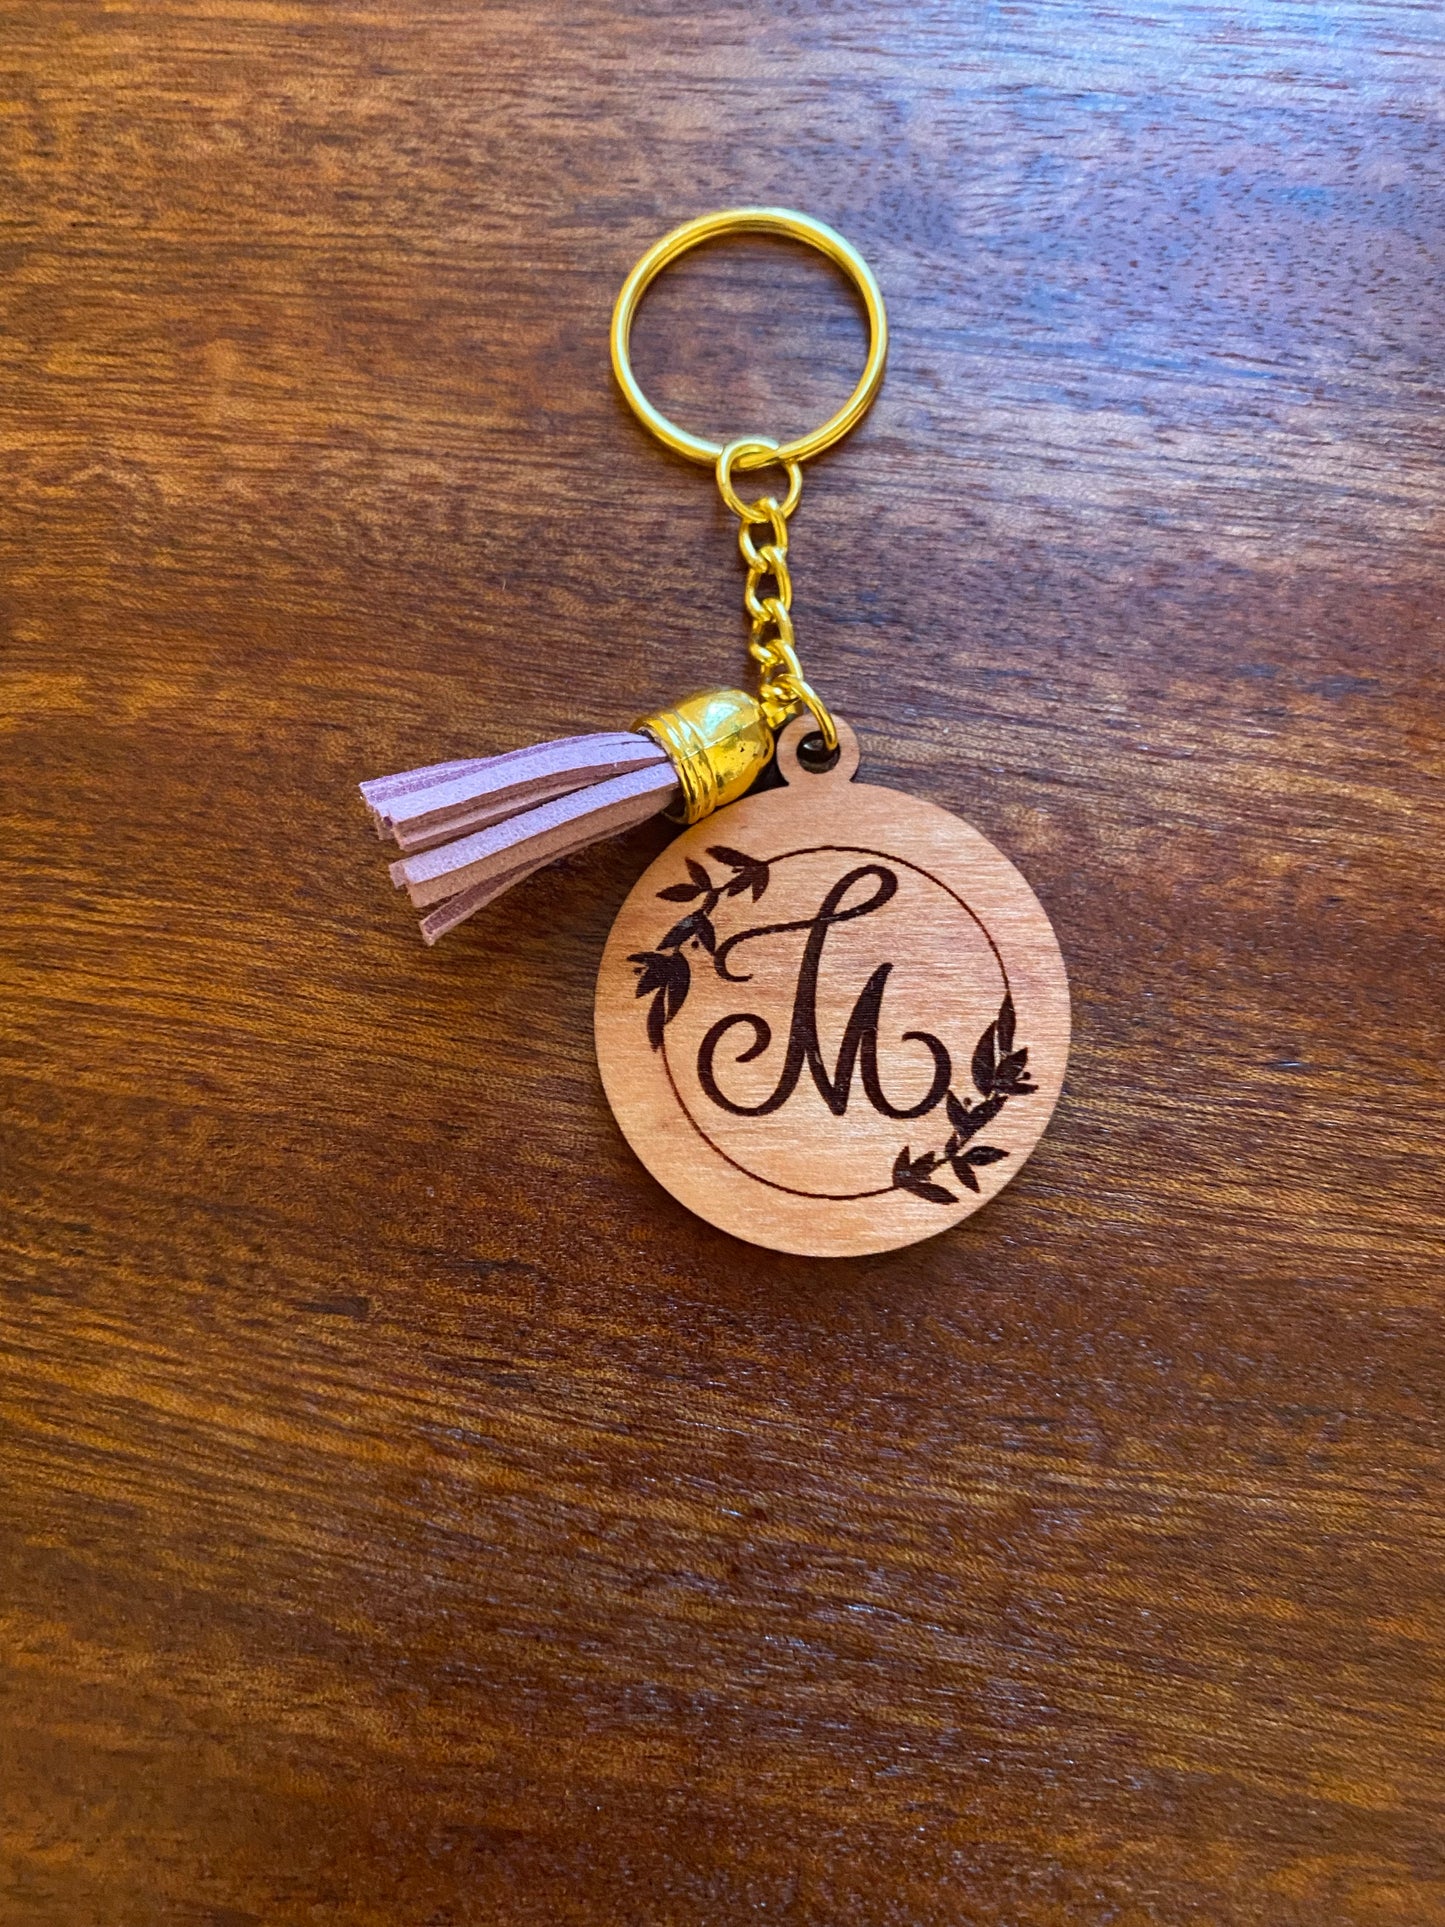 Floral alphabet wooden keychains